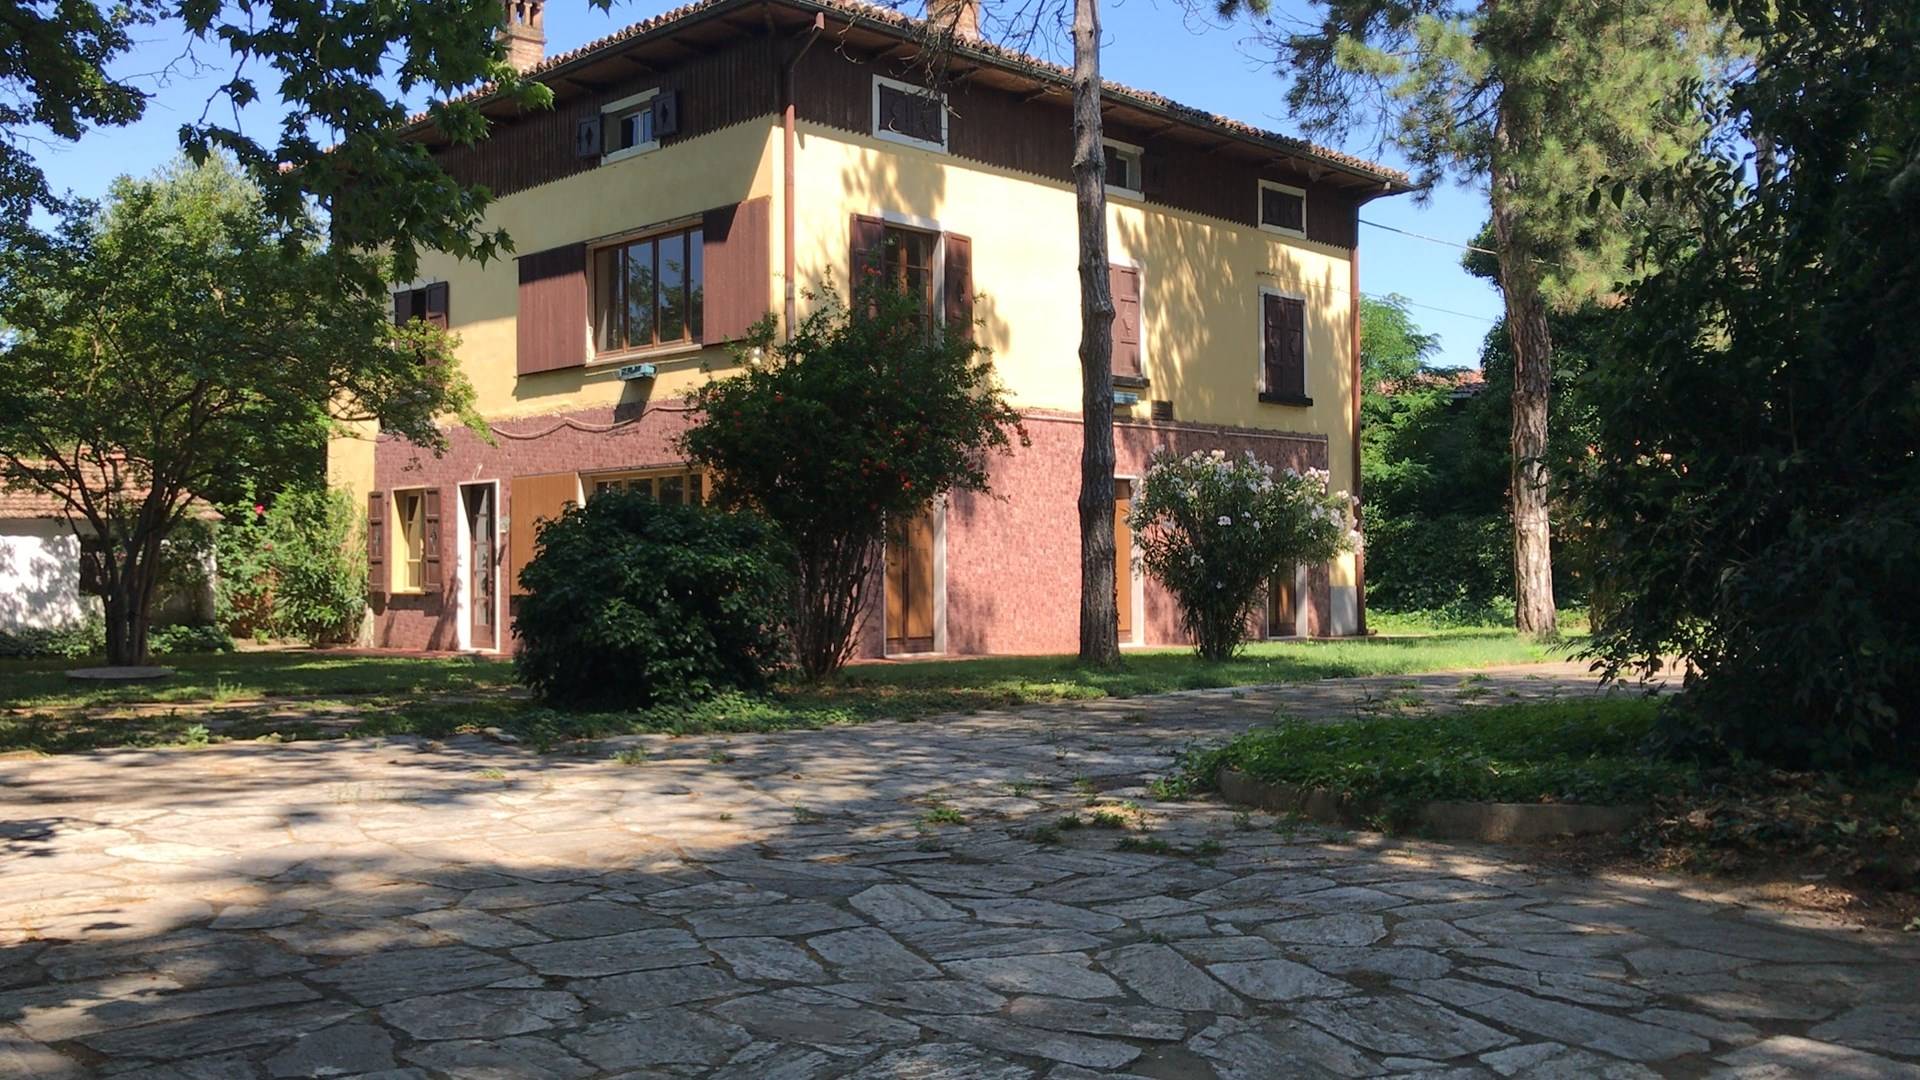 Villa in vendita a Castelnuovo Scrivia, 10 locali, prezzo € 300.000 | PortaleAgenzieImmobiliari.it